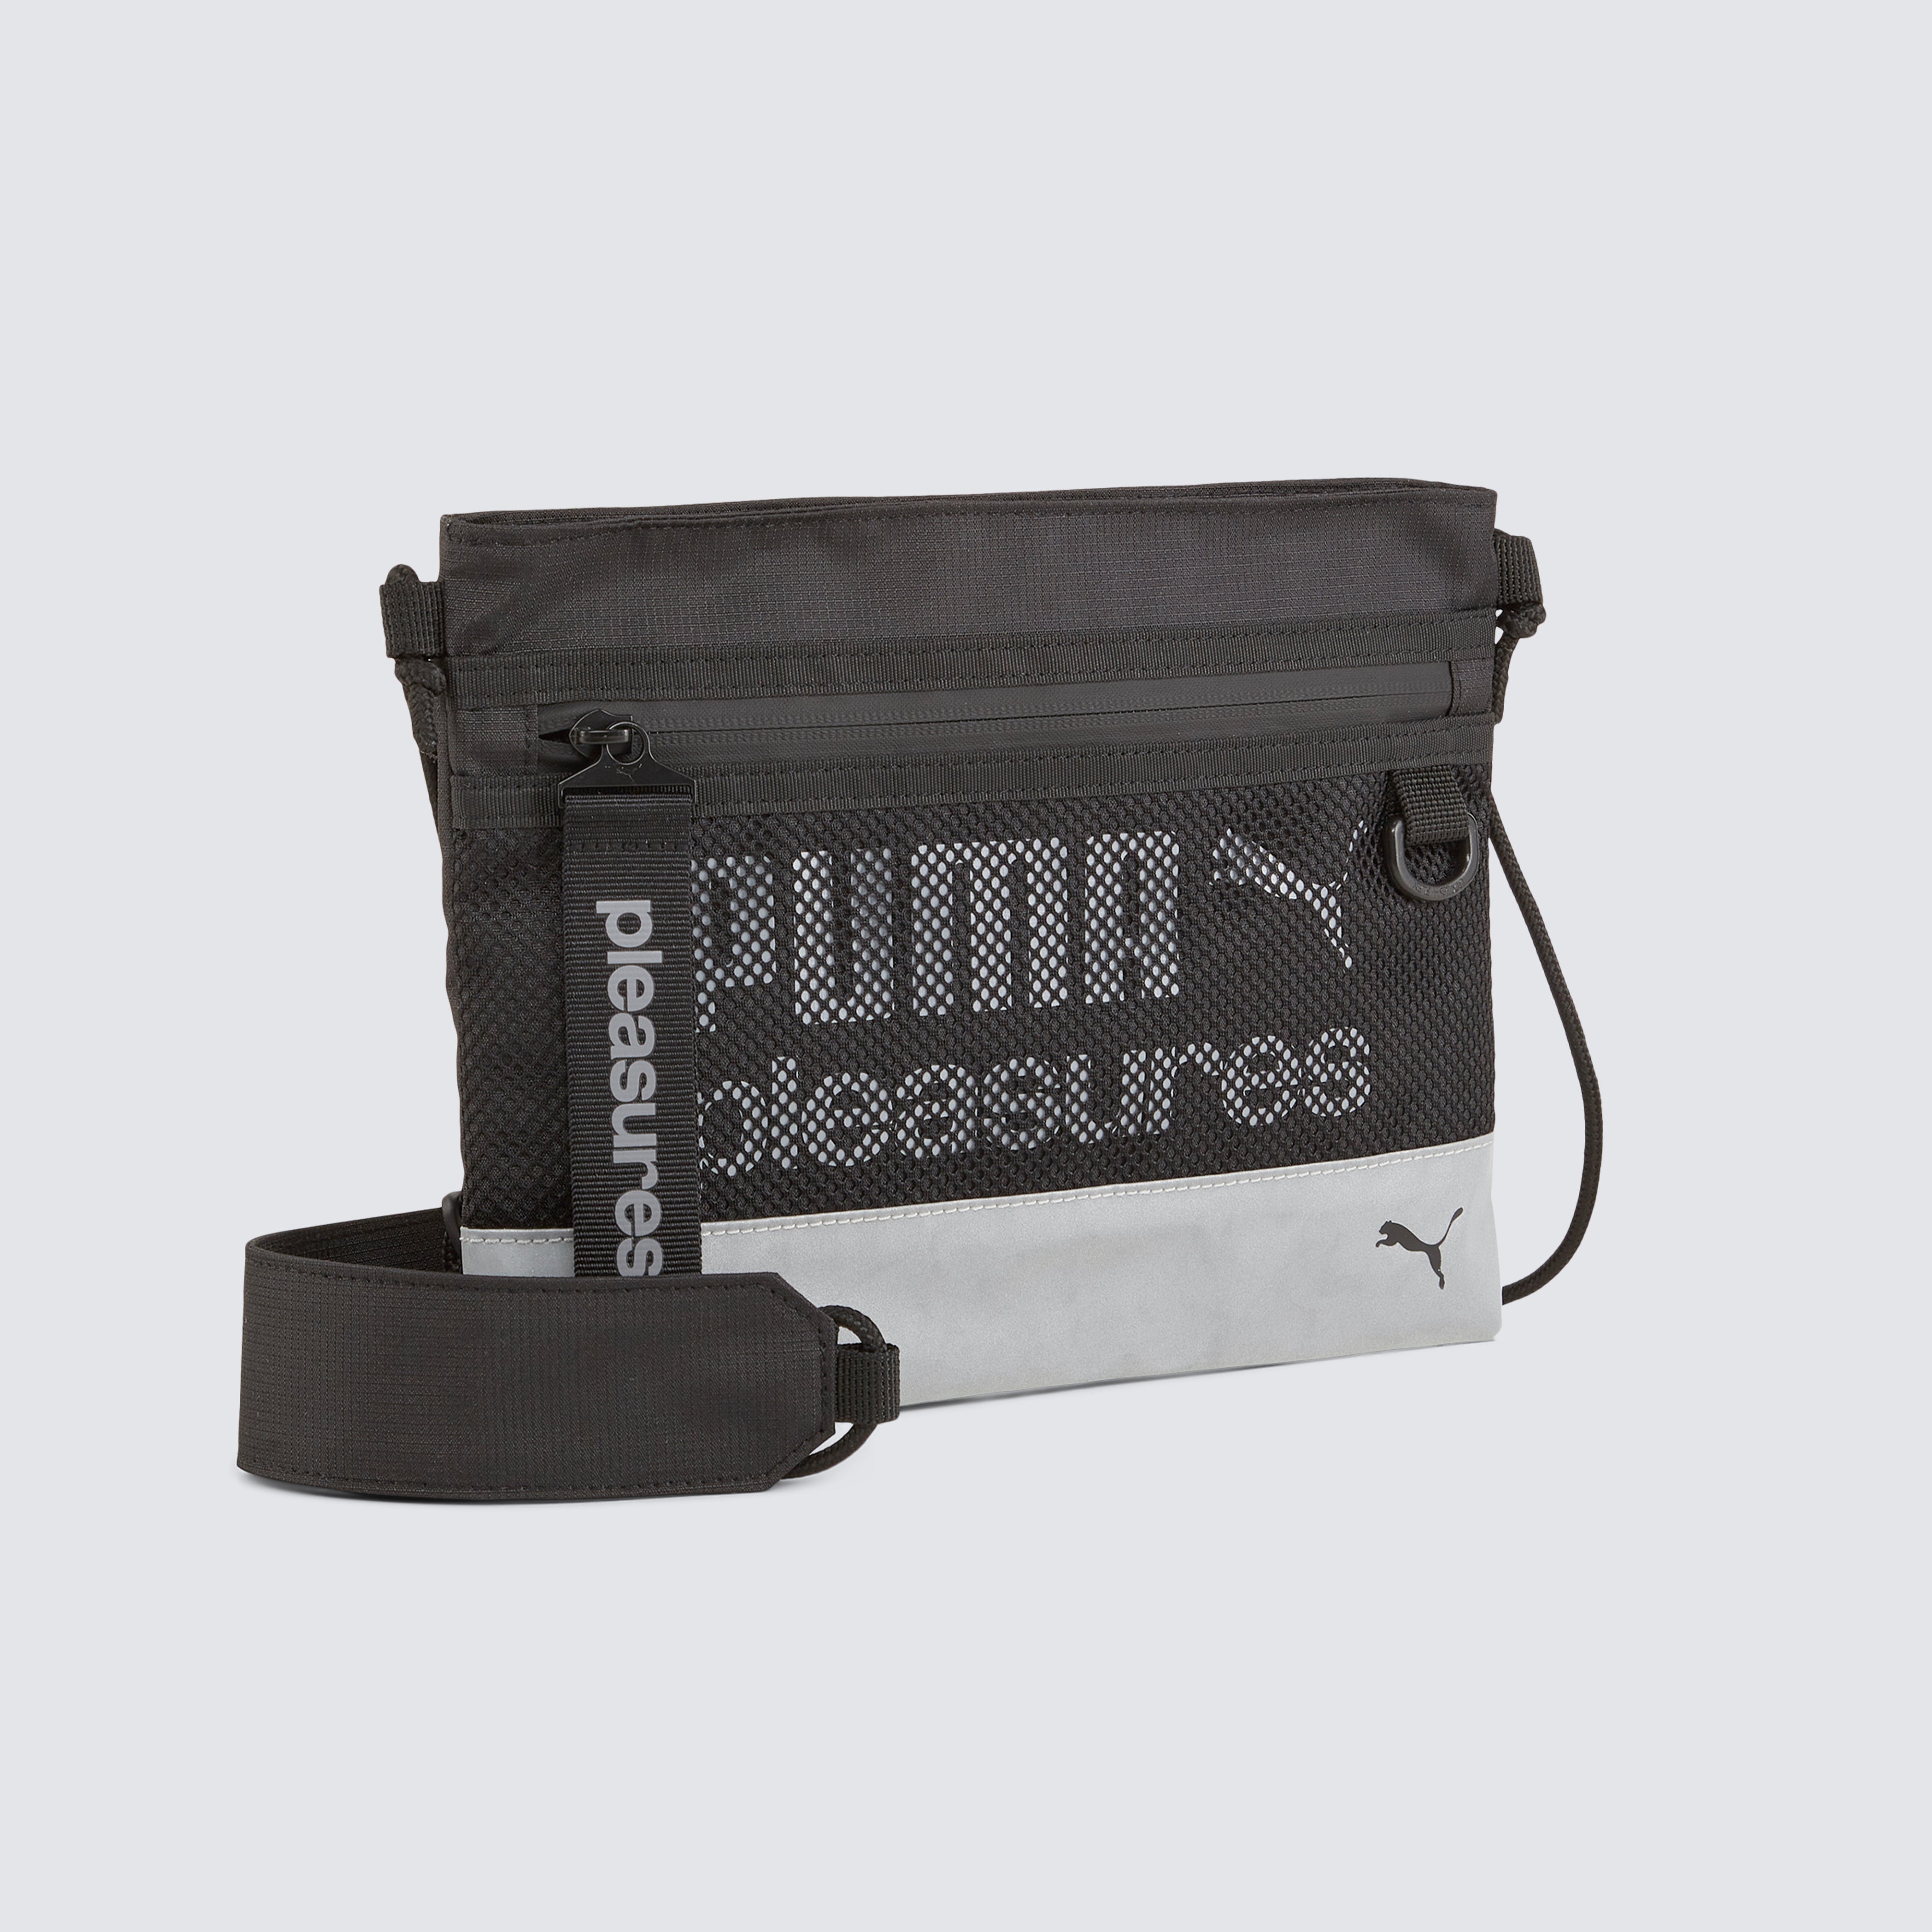 Puma Mercedes-AMG Petronas F1 Team Portable Bag